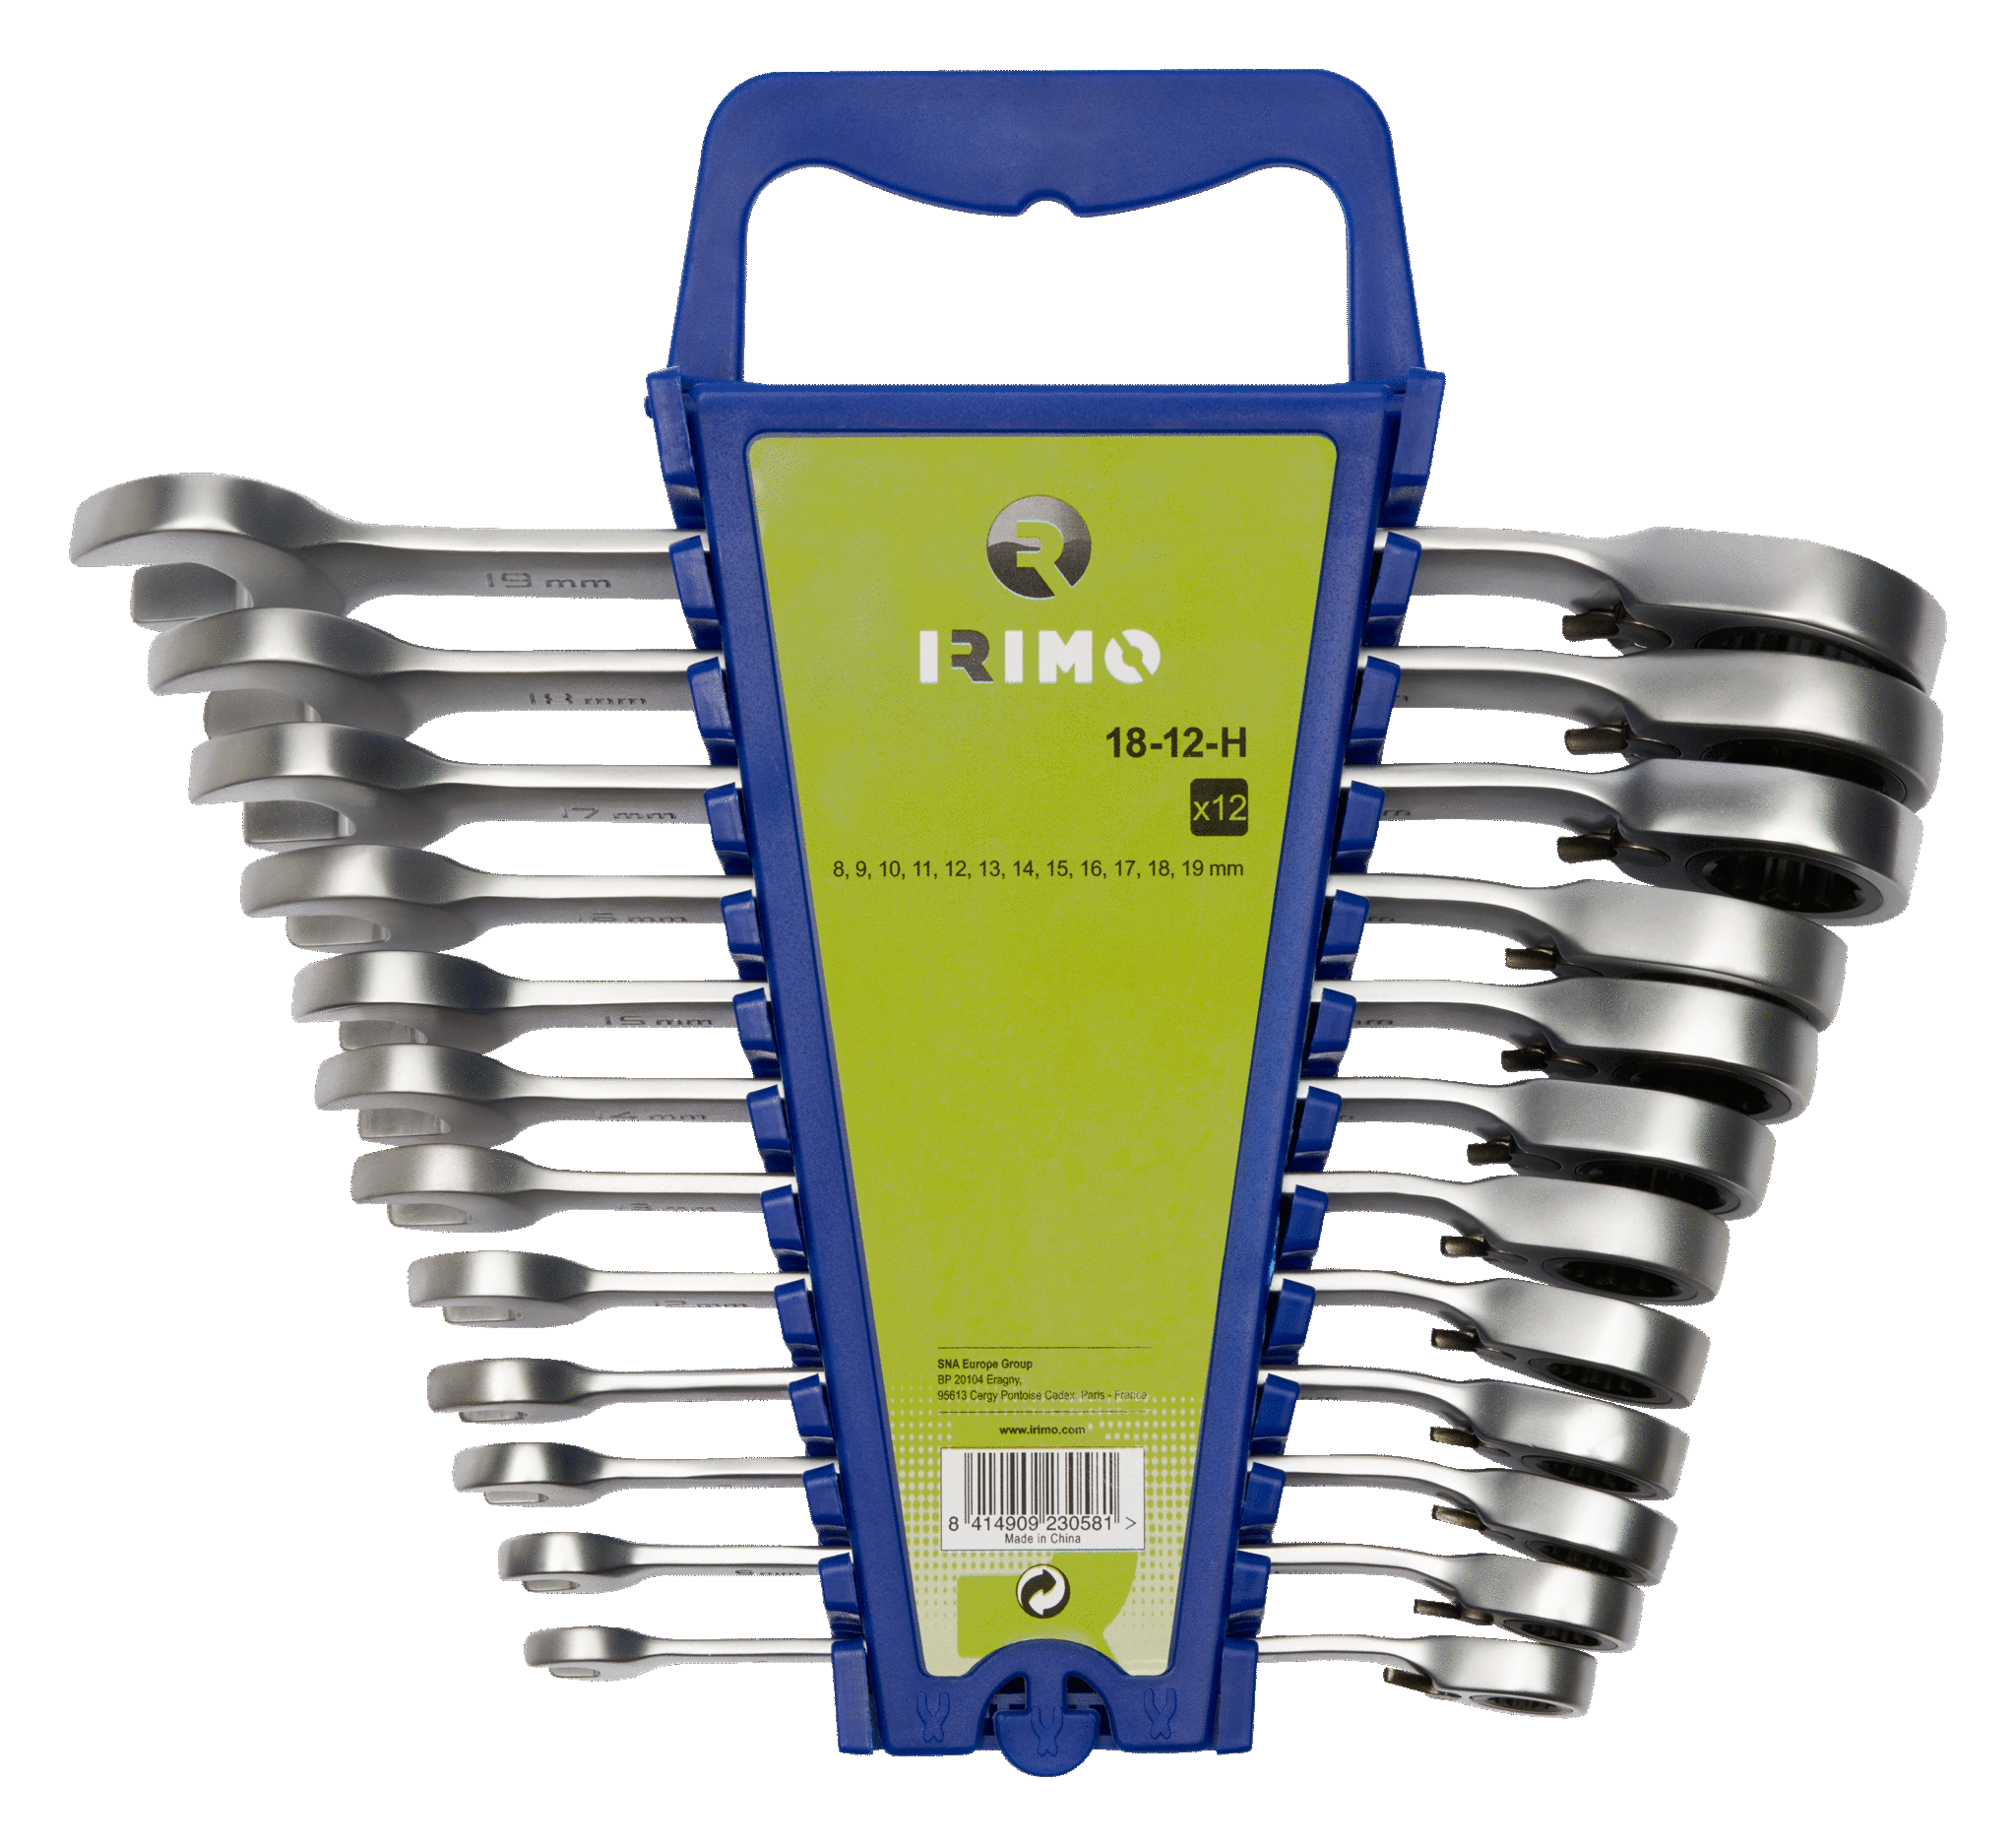  комбинированных ключей с храповиком, держатель на 12 шт. | IRIMO